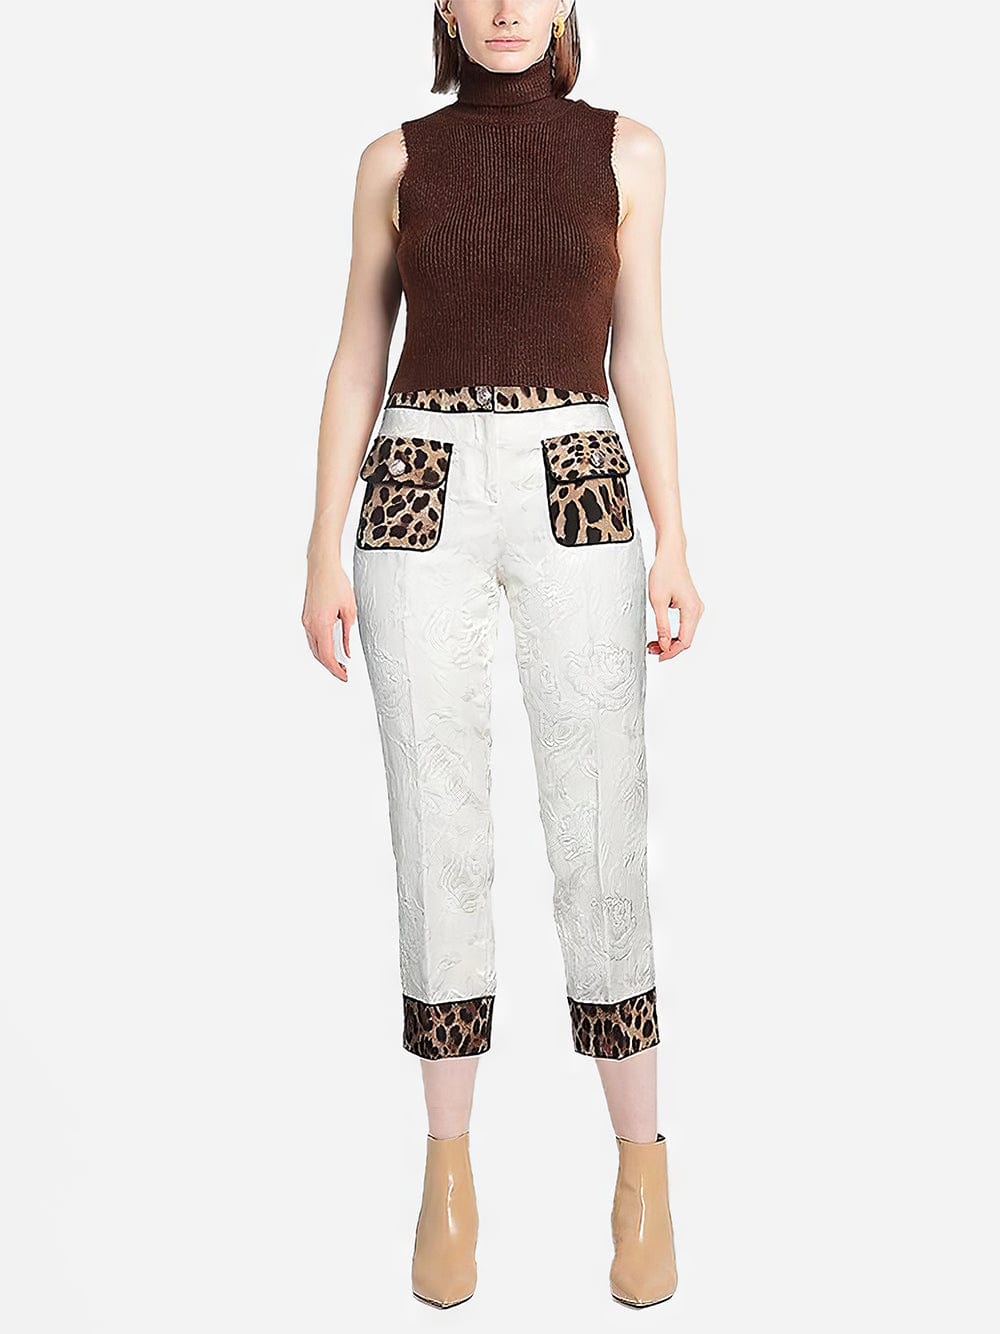 Dolce & Gabbana High-Waist Leopard Print Pants